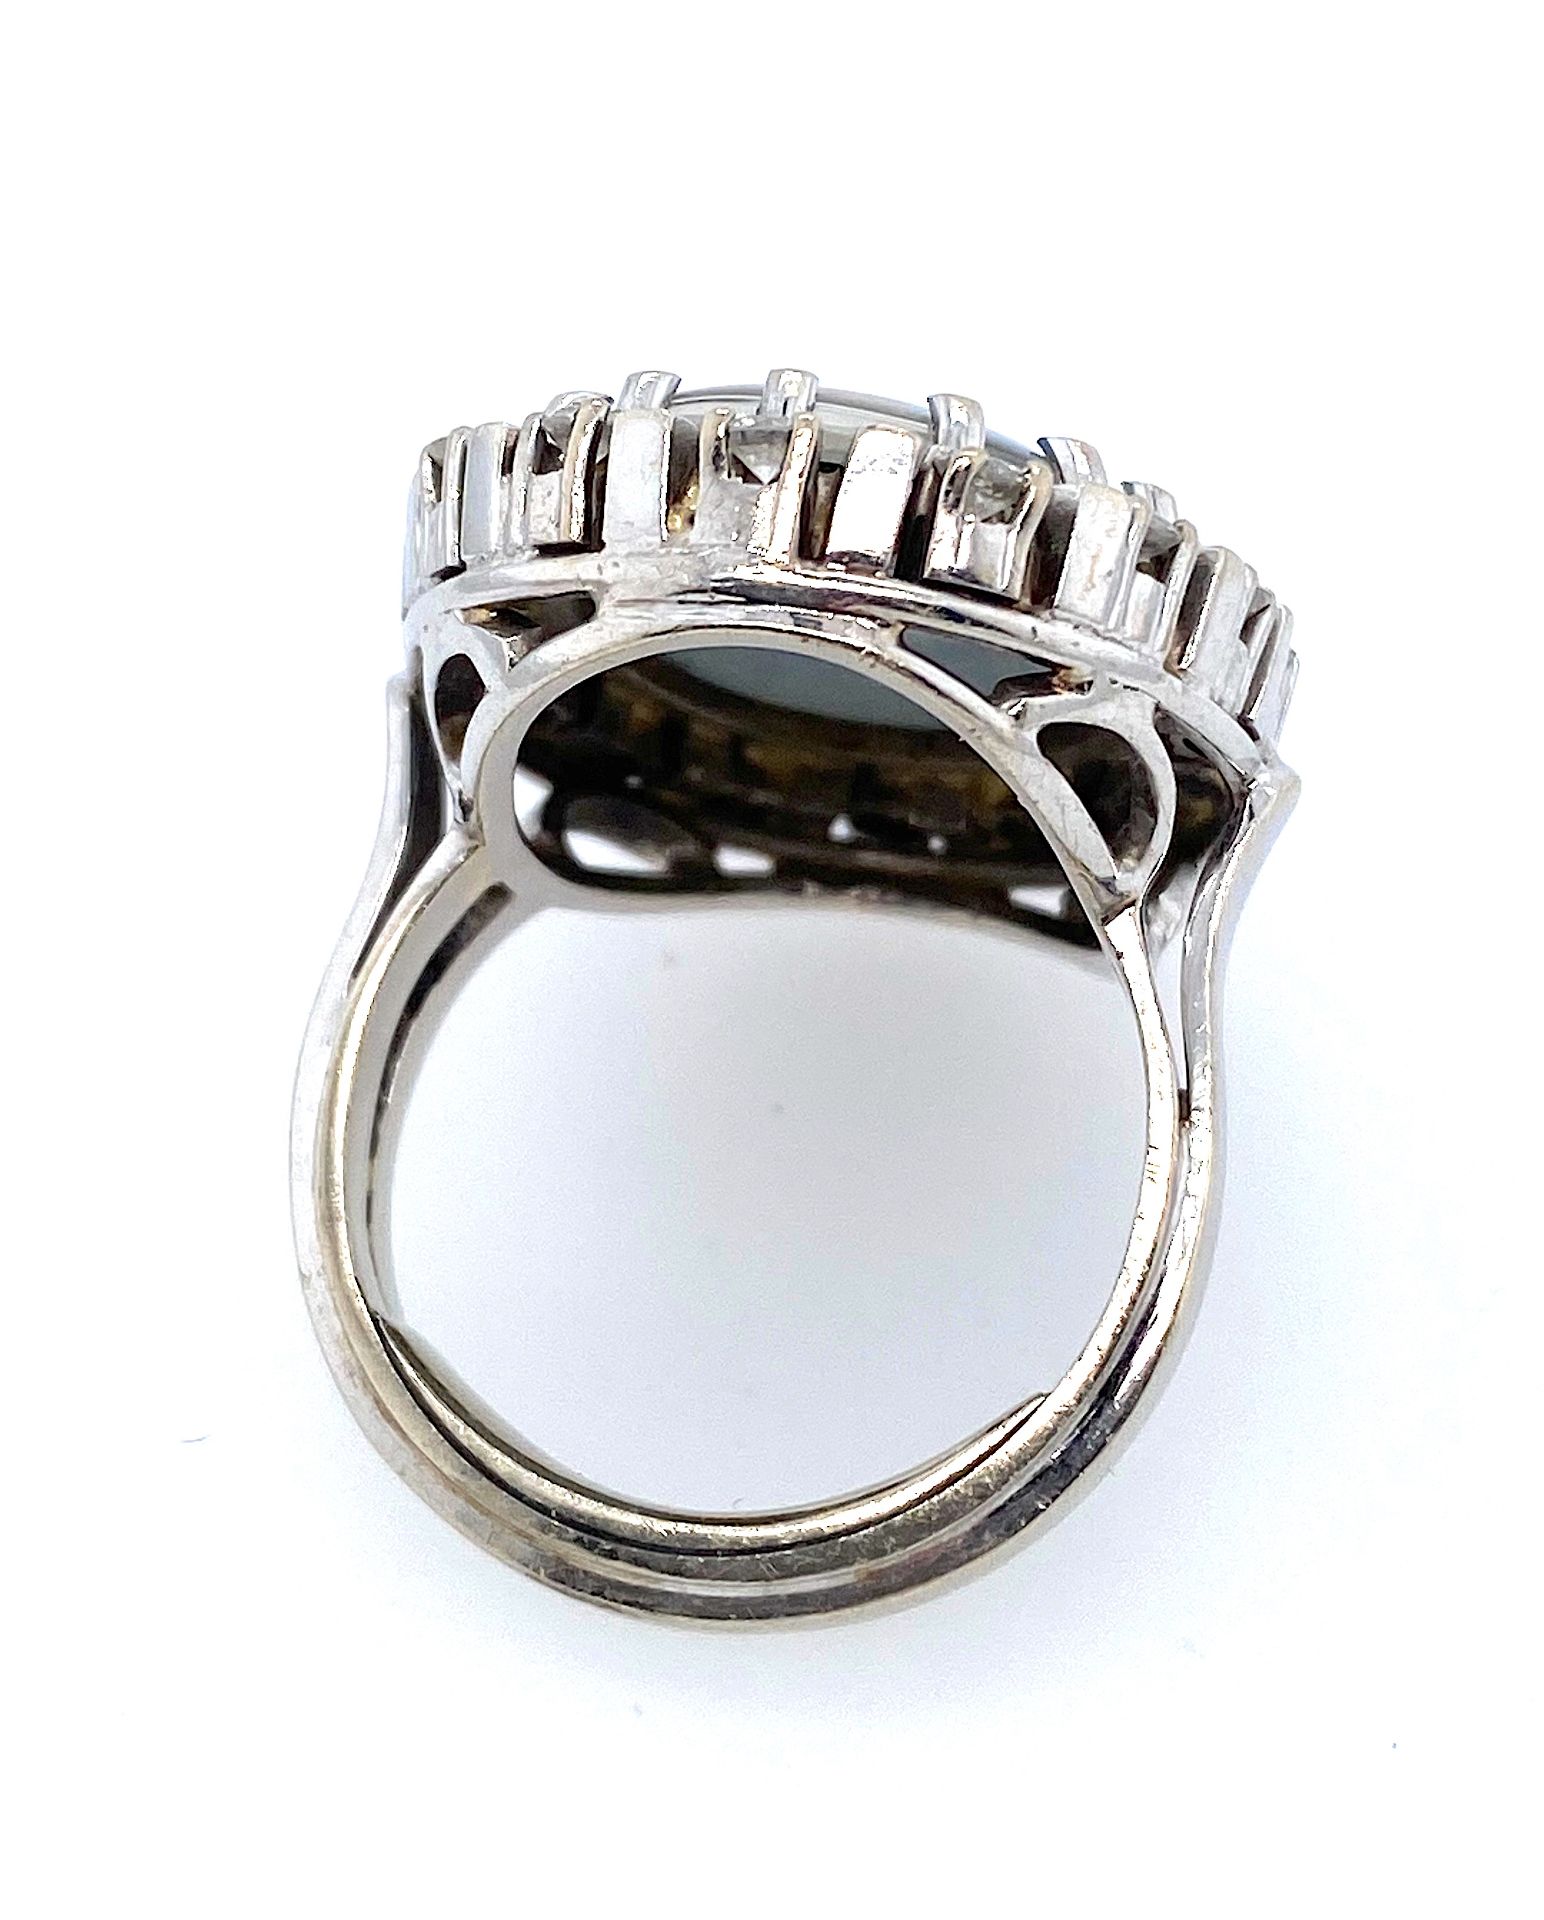 Vintage Ring mit ges. ca. 0,30 ct Brillanten und Opal-Triplette - Bild 4 aus 4